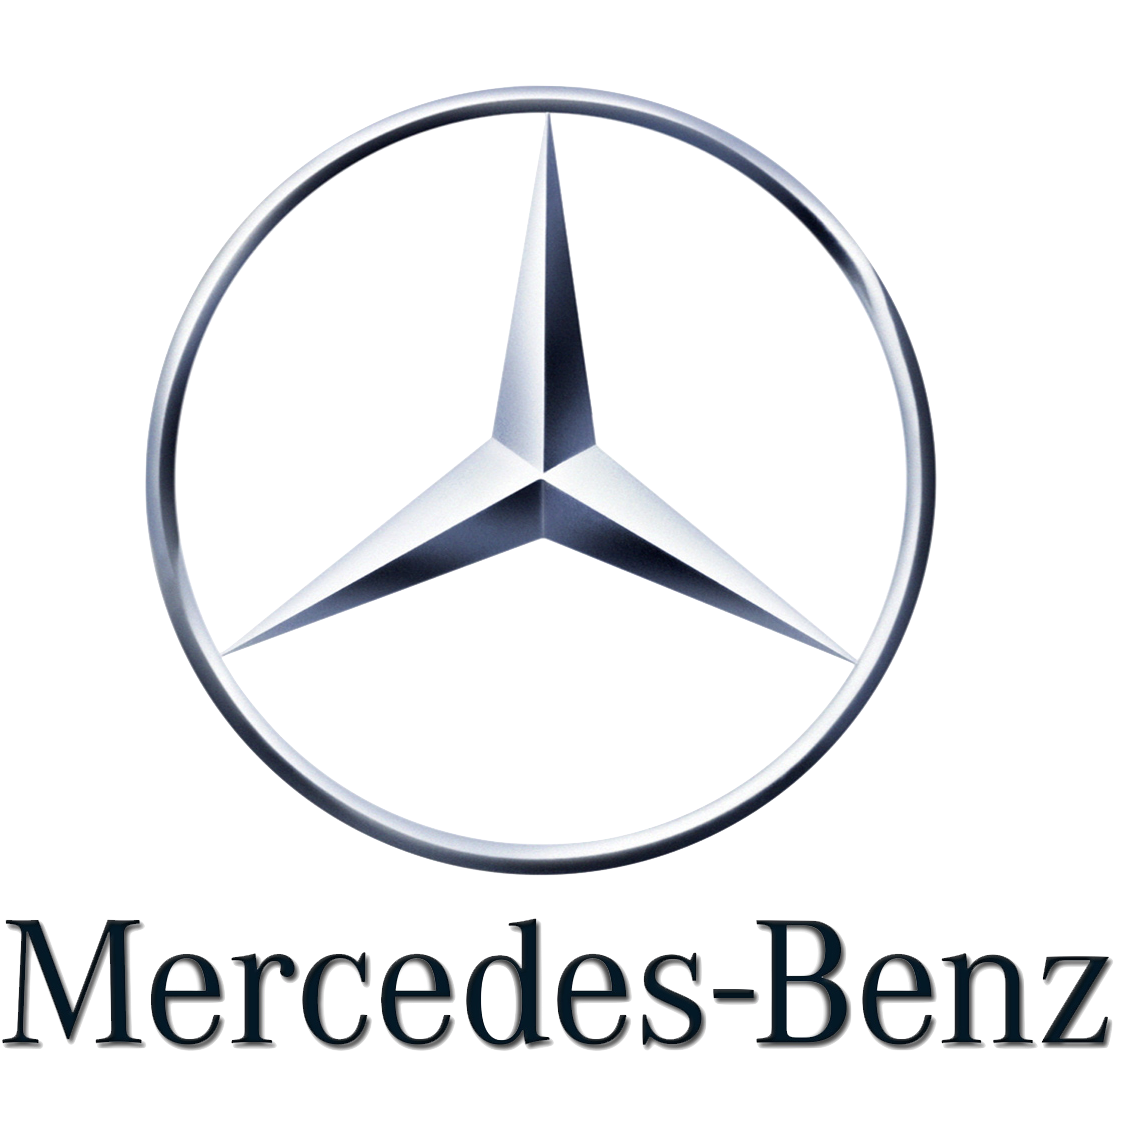 Mercedes-Benz Research & Development North America